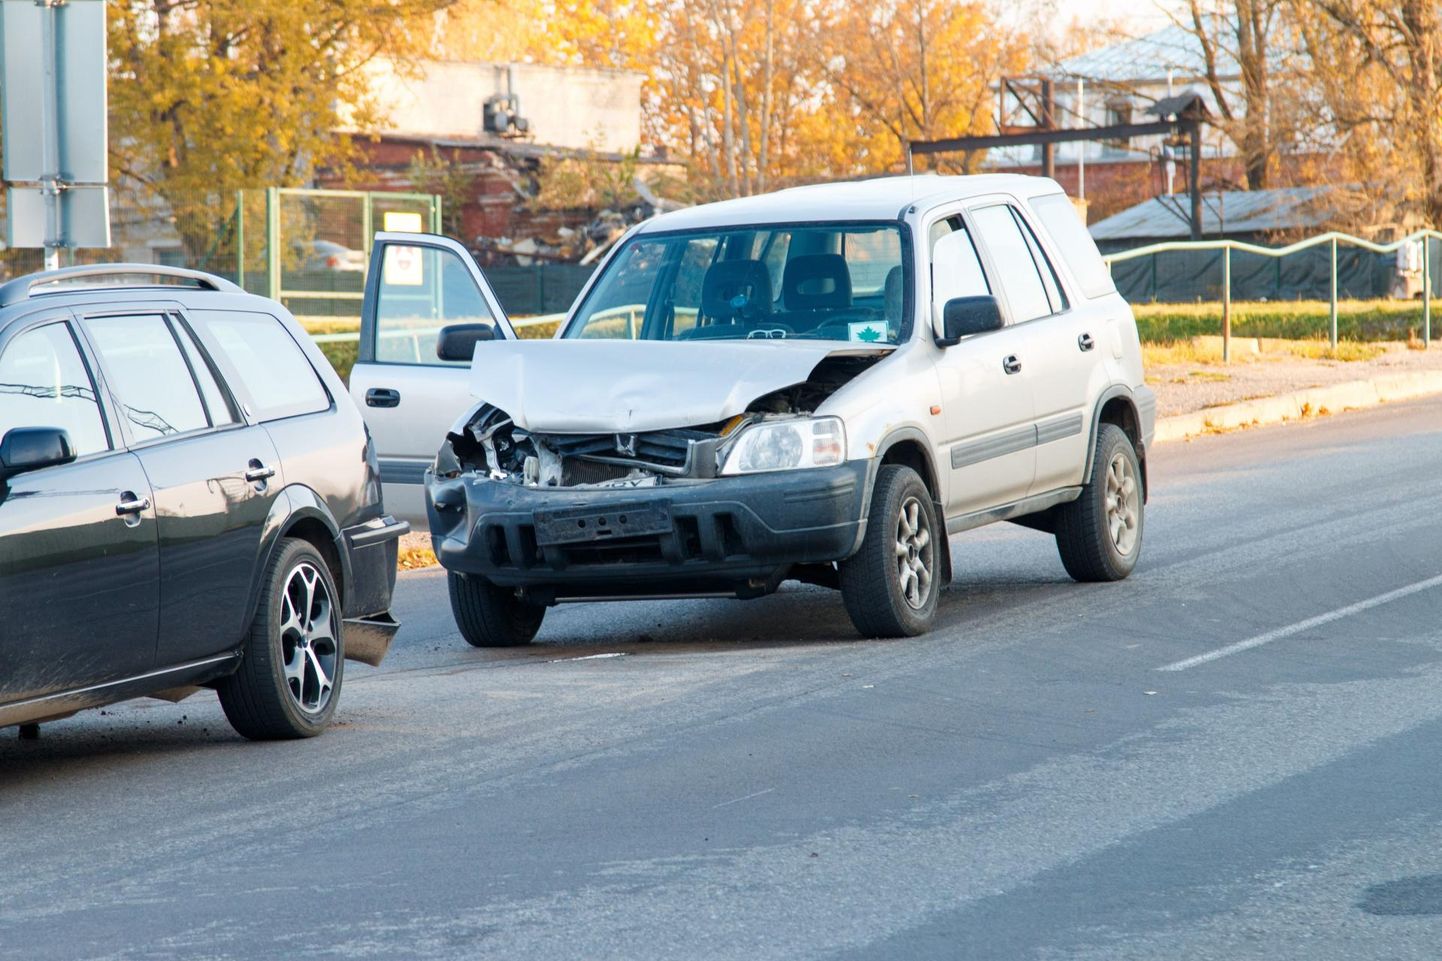 Kas helistada politseisse või kindlustusse? Parkida auto või mitte? Vahetult pärast liiklusõnnetust võib tekkida mitu olulist küsimust, mille vastuste teadmine aitab täbarast olukorrast kergemini välja tulla. 